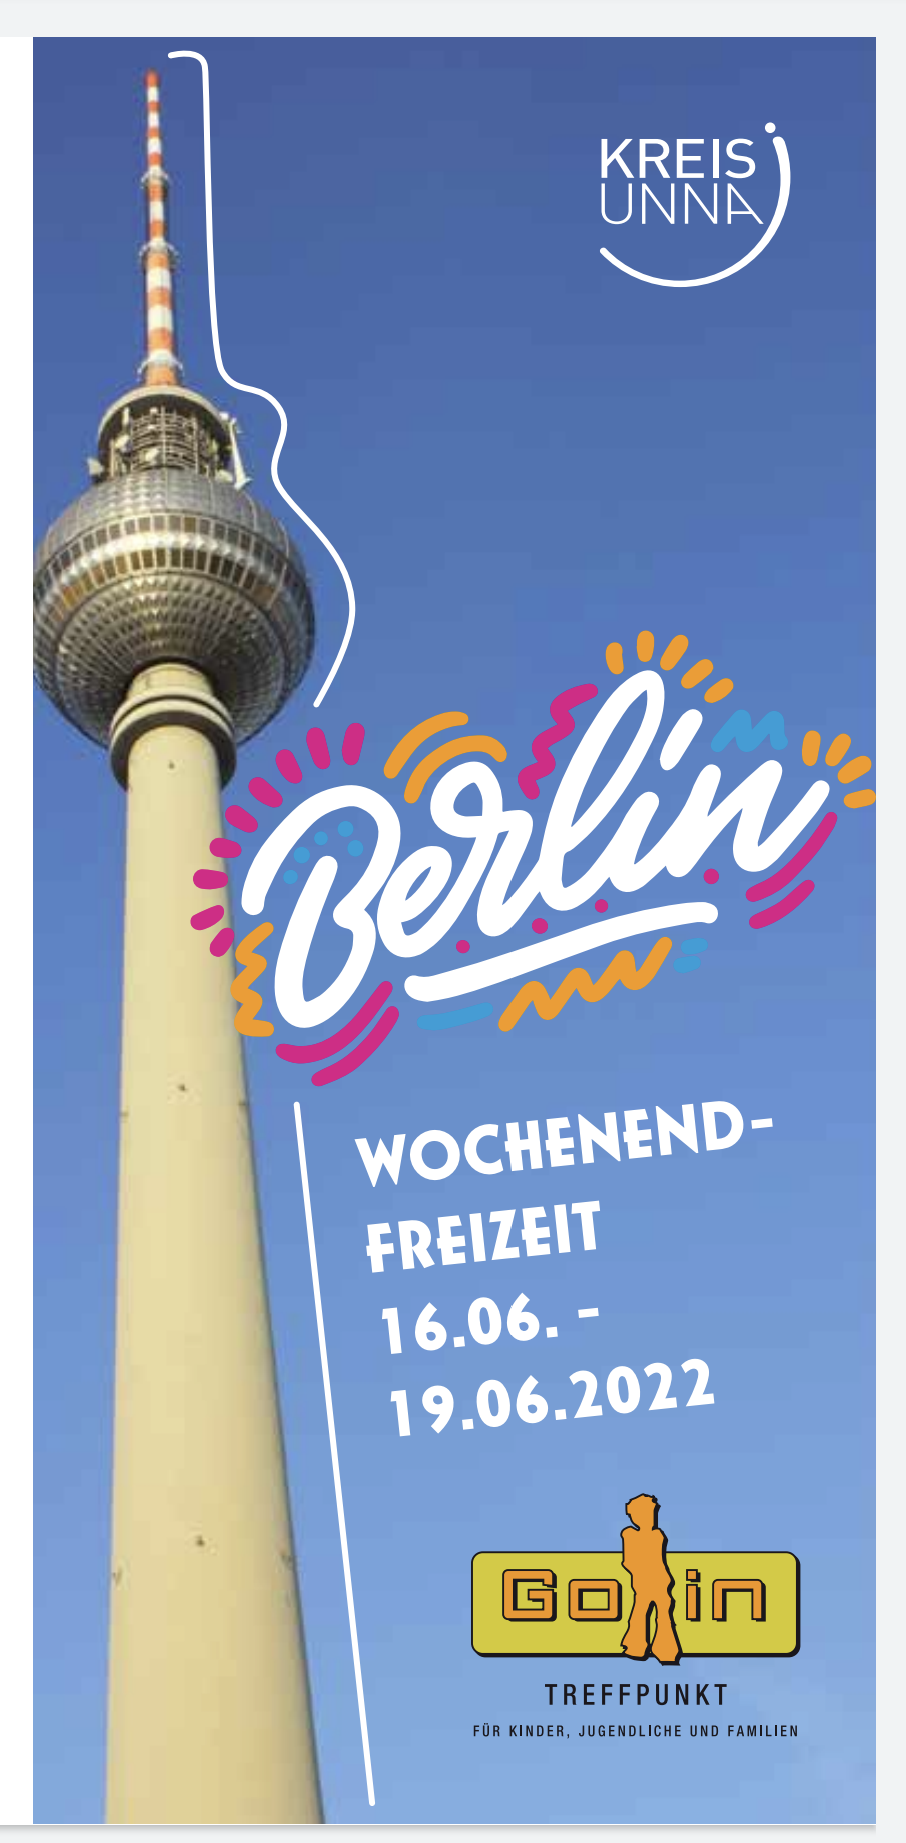 Wochenendfreizeit Berlin 2022